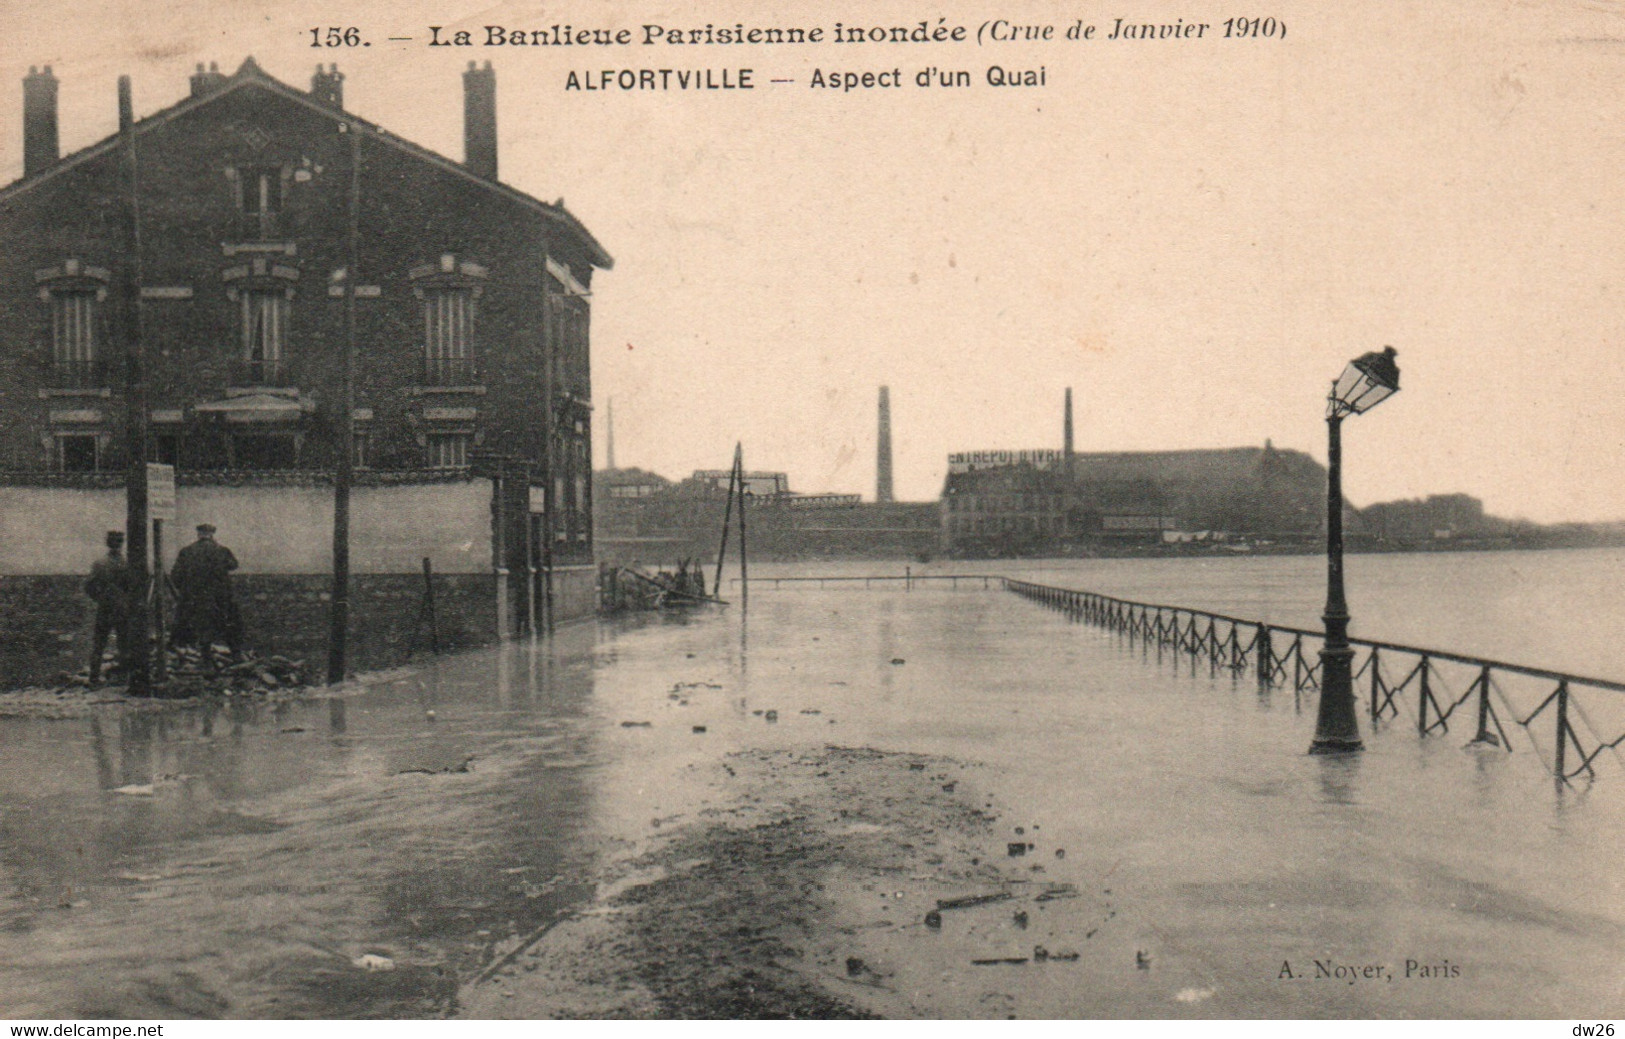 La Banlieue Parisienne Inondée: Crue De Janvier 1910 - Alfortville: Aspect D'un Quai - Carte Noyer N° 156 Non Circulée - Floods